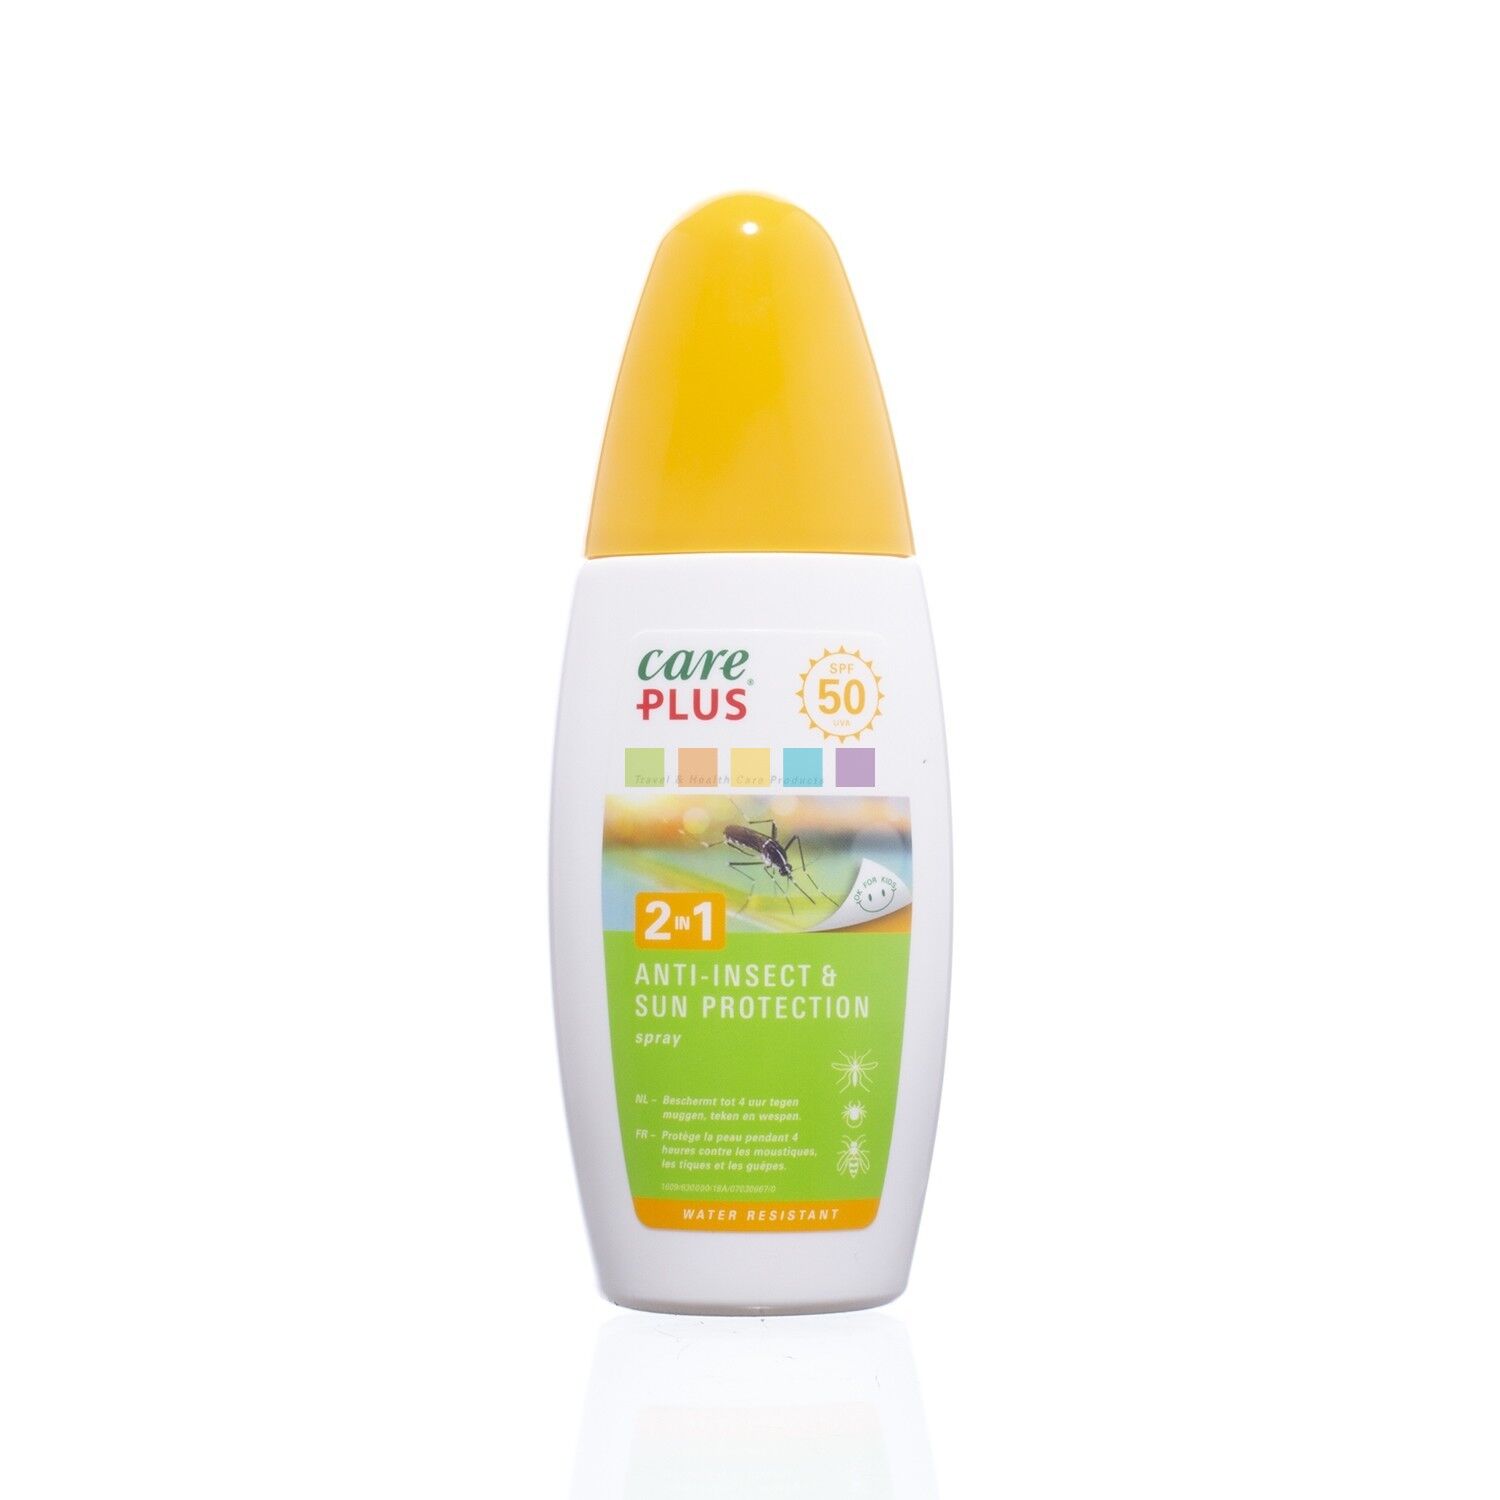 Care Plus 2in1 Anti-Insect & Sun Protection Spray SPF50 - Protezioni contro gli insetti